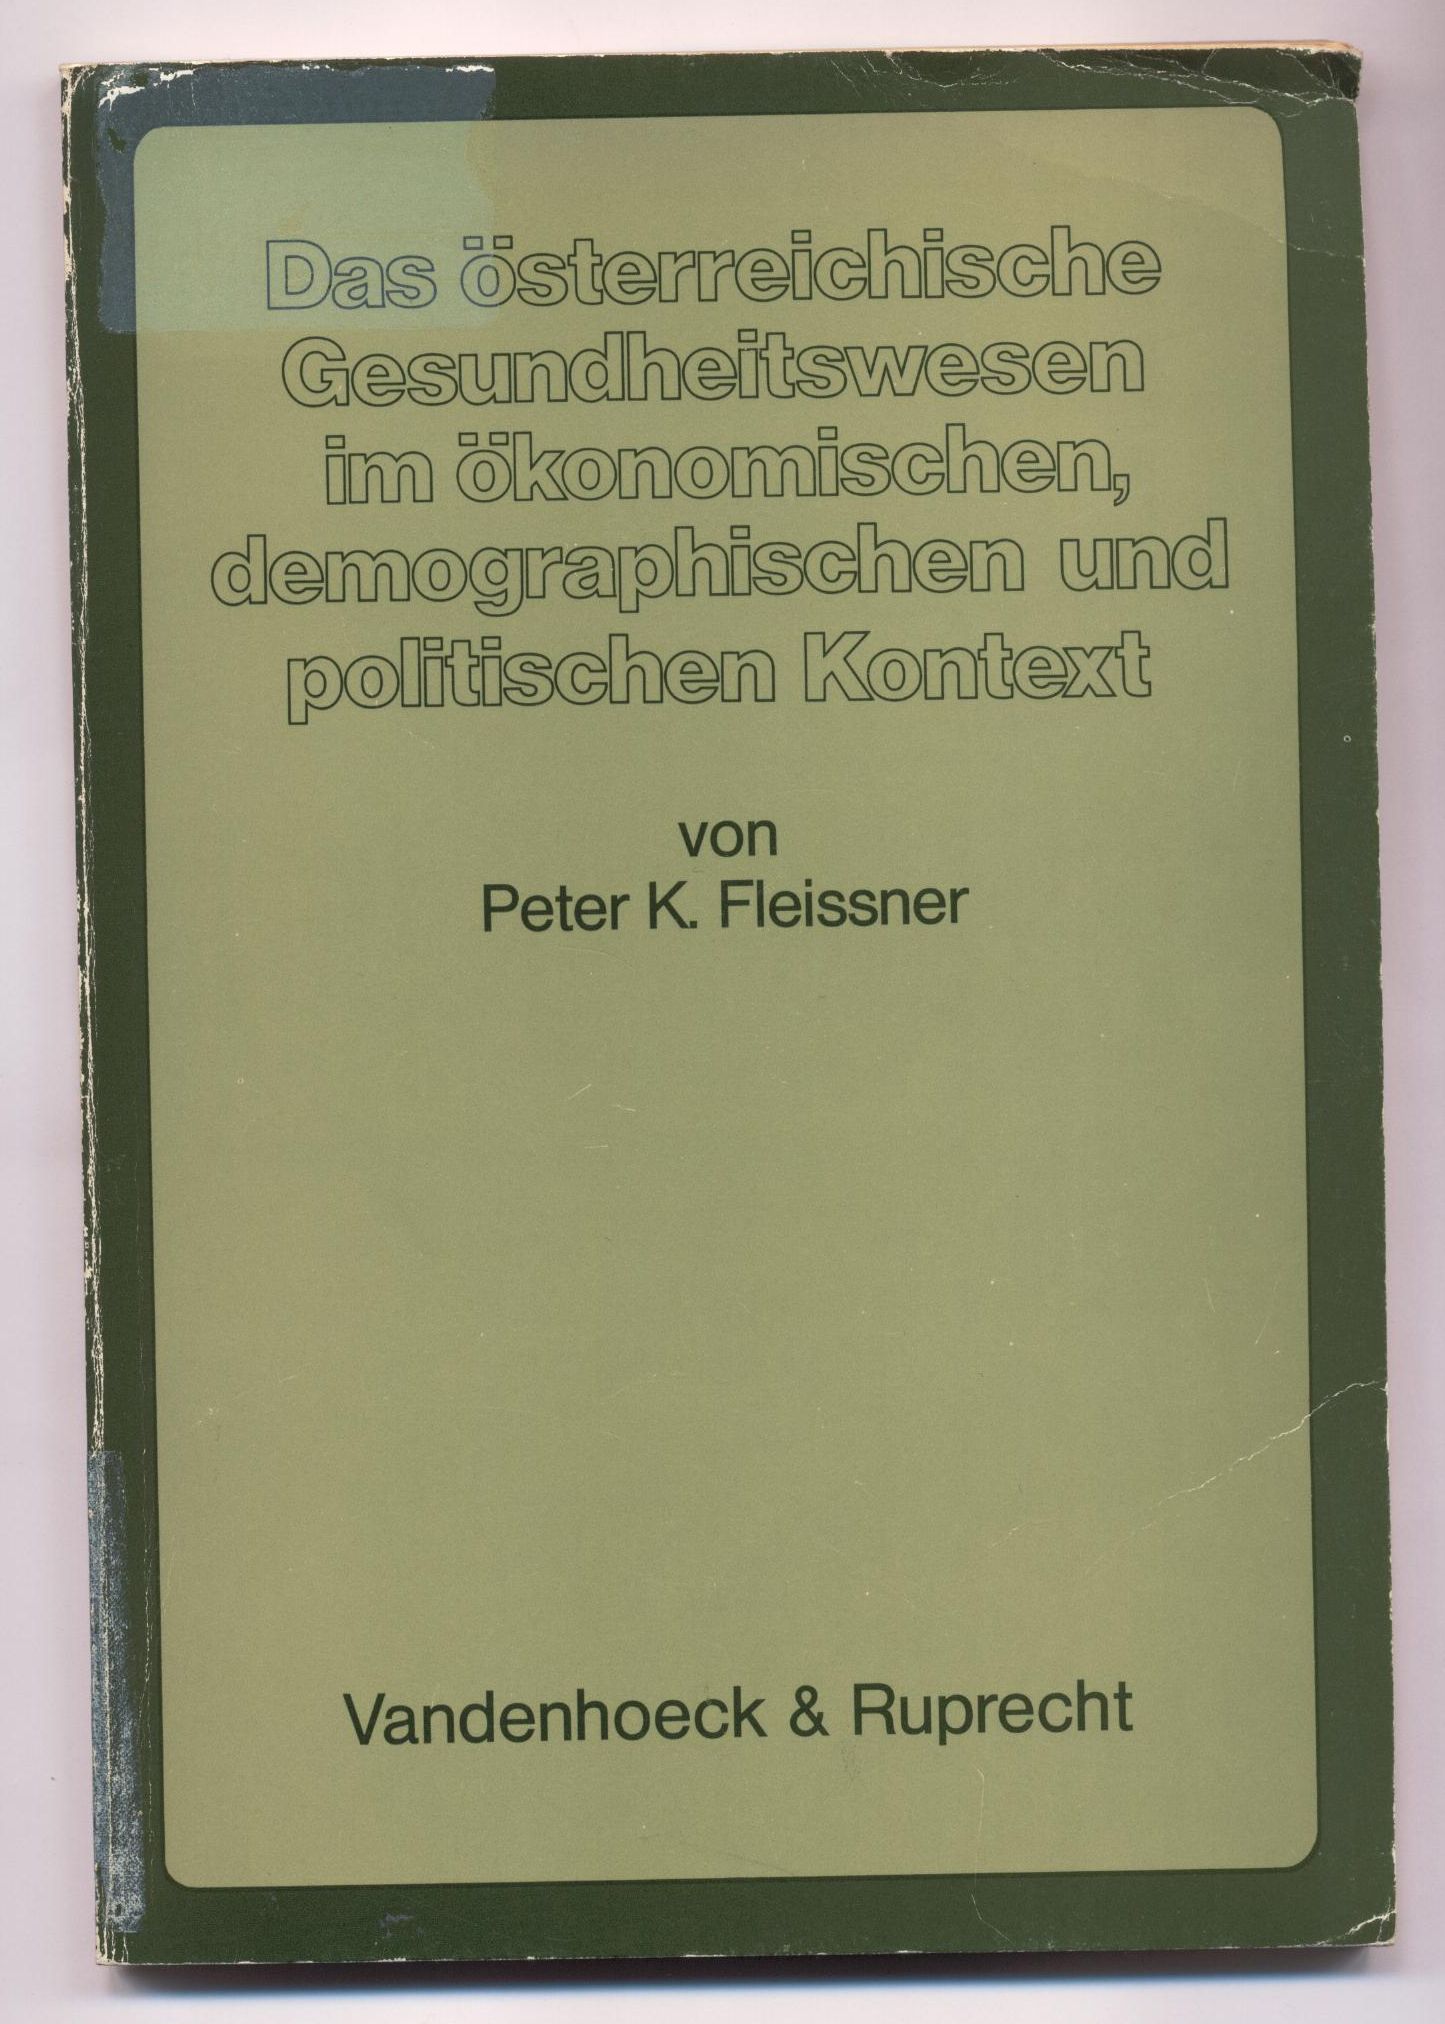 Das österreichische Gesundheitswesen im ökonomischen, demographischen und politischen Kontext. Ein Simulationsmodell - Fleissner, Peter K.